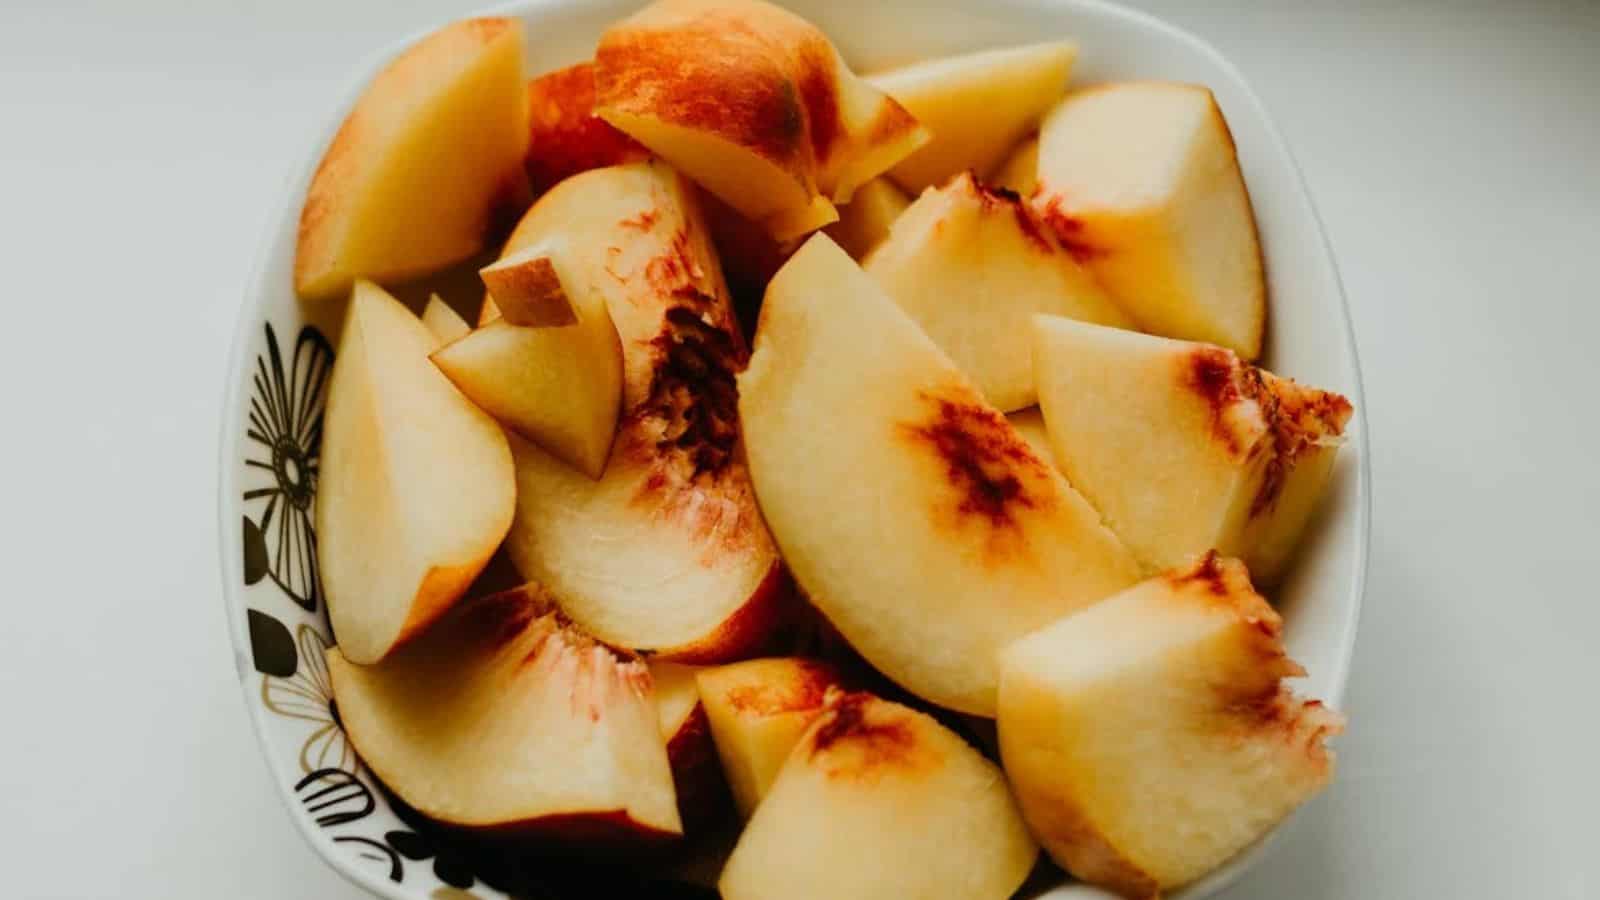 Sliced Apples on White Ceramic Bowl.